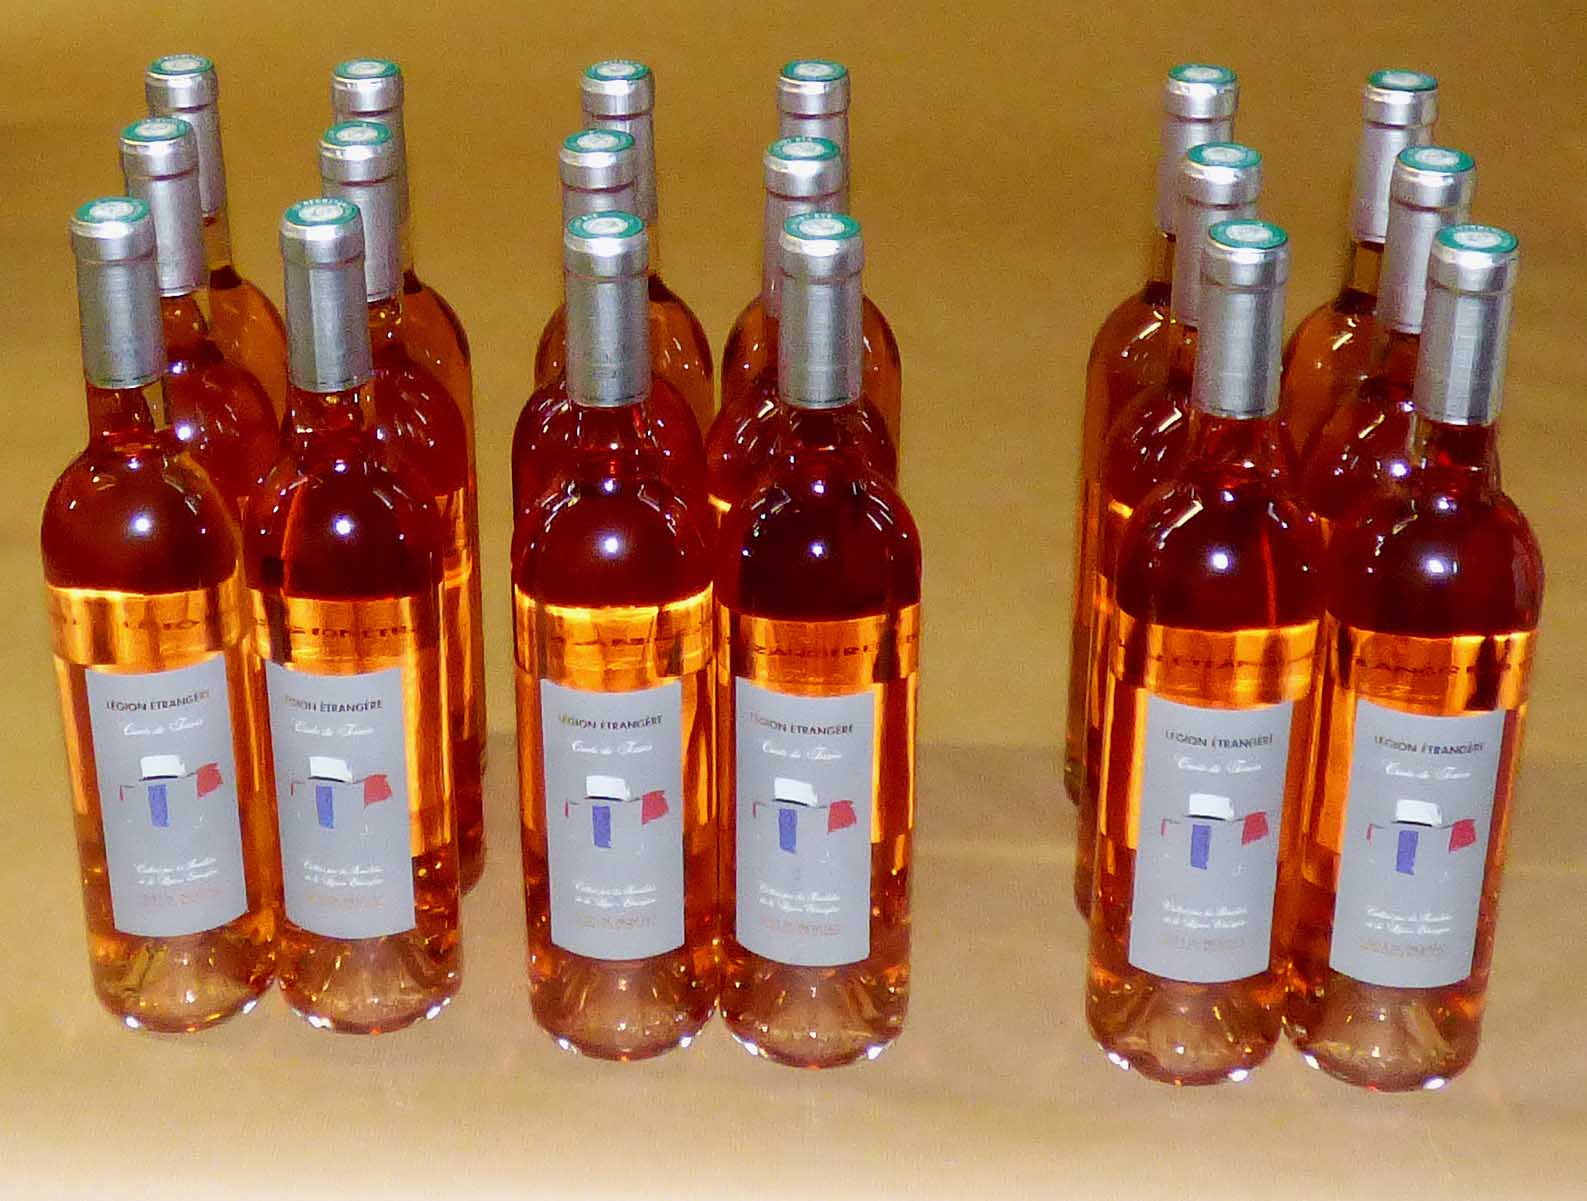 Promo Terroir Rosé. 2 cartons achetés = 1 carton + livraison offerts